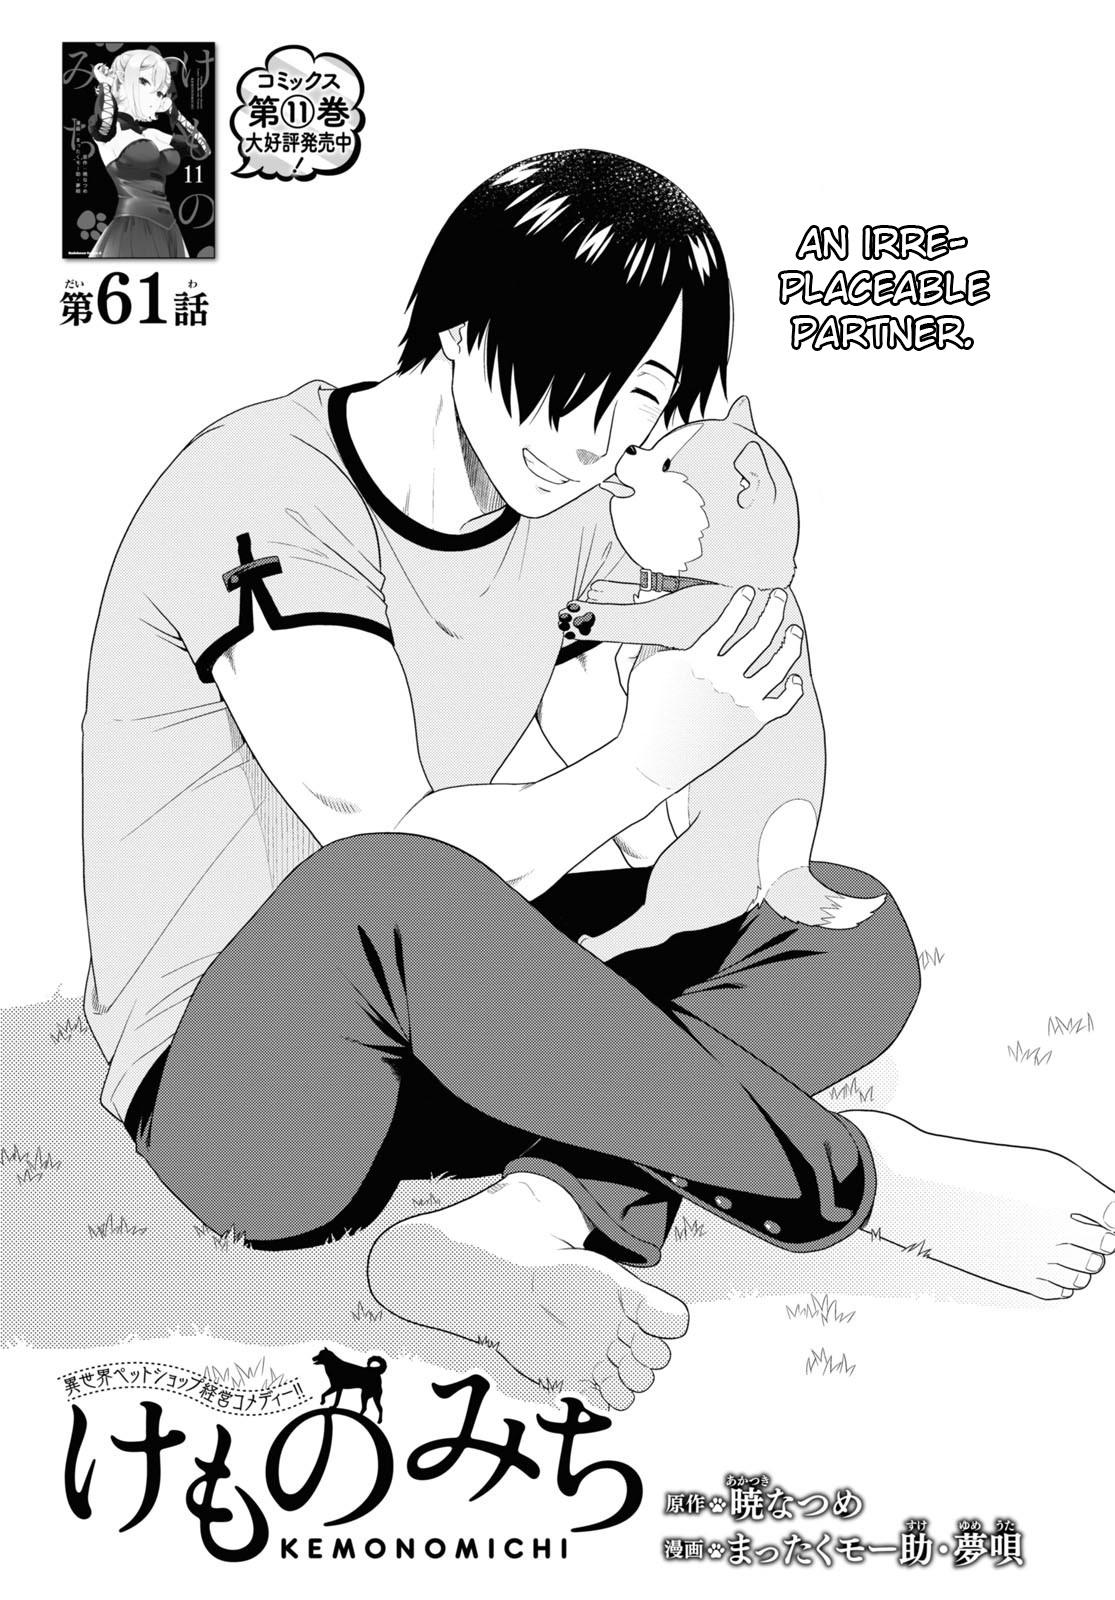 Read Kemono Michi (Natsume Akatsuki) Chapter 63: (Chapter 67) on  Mangakakalot